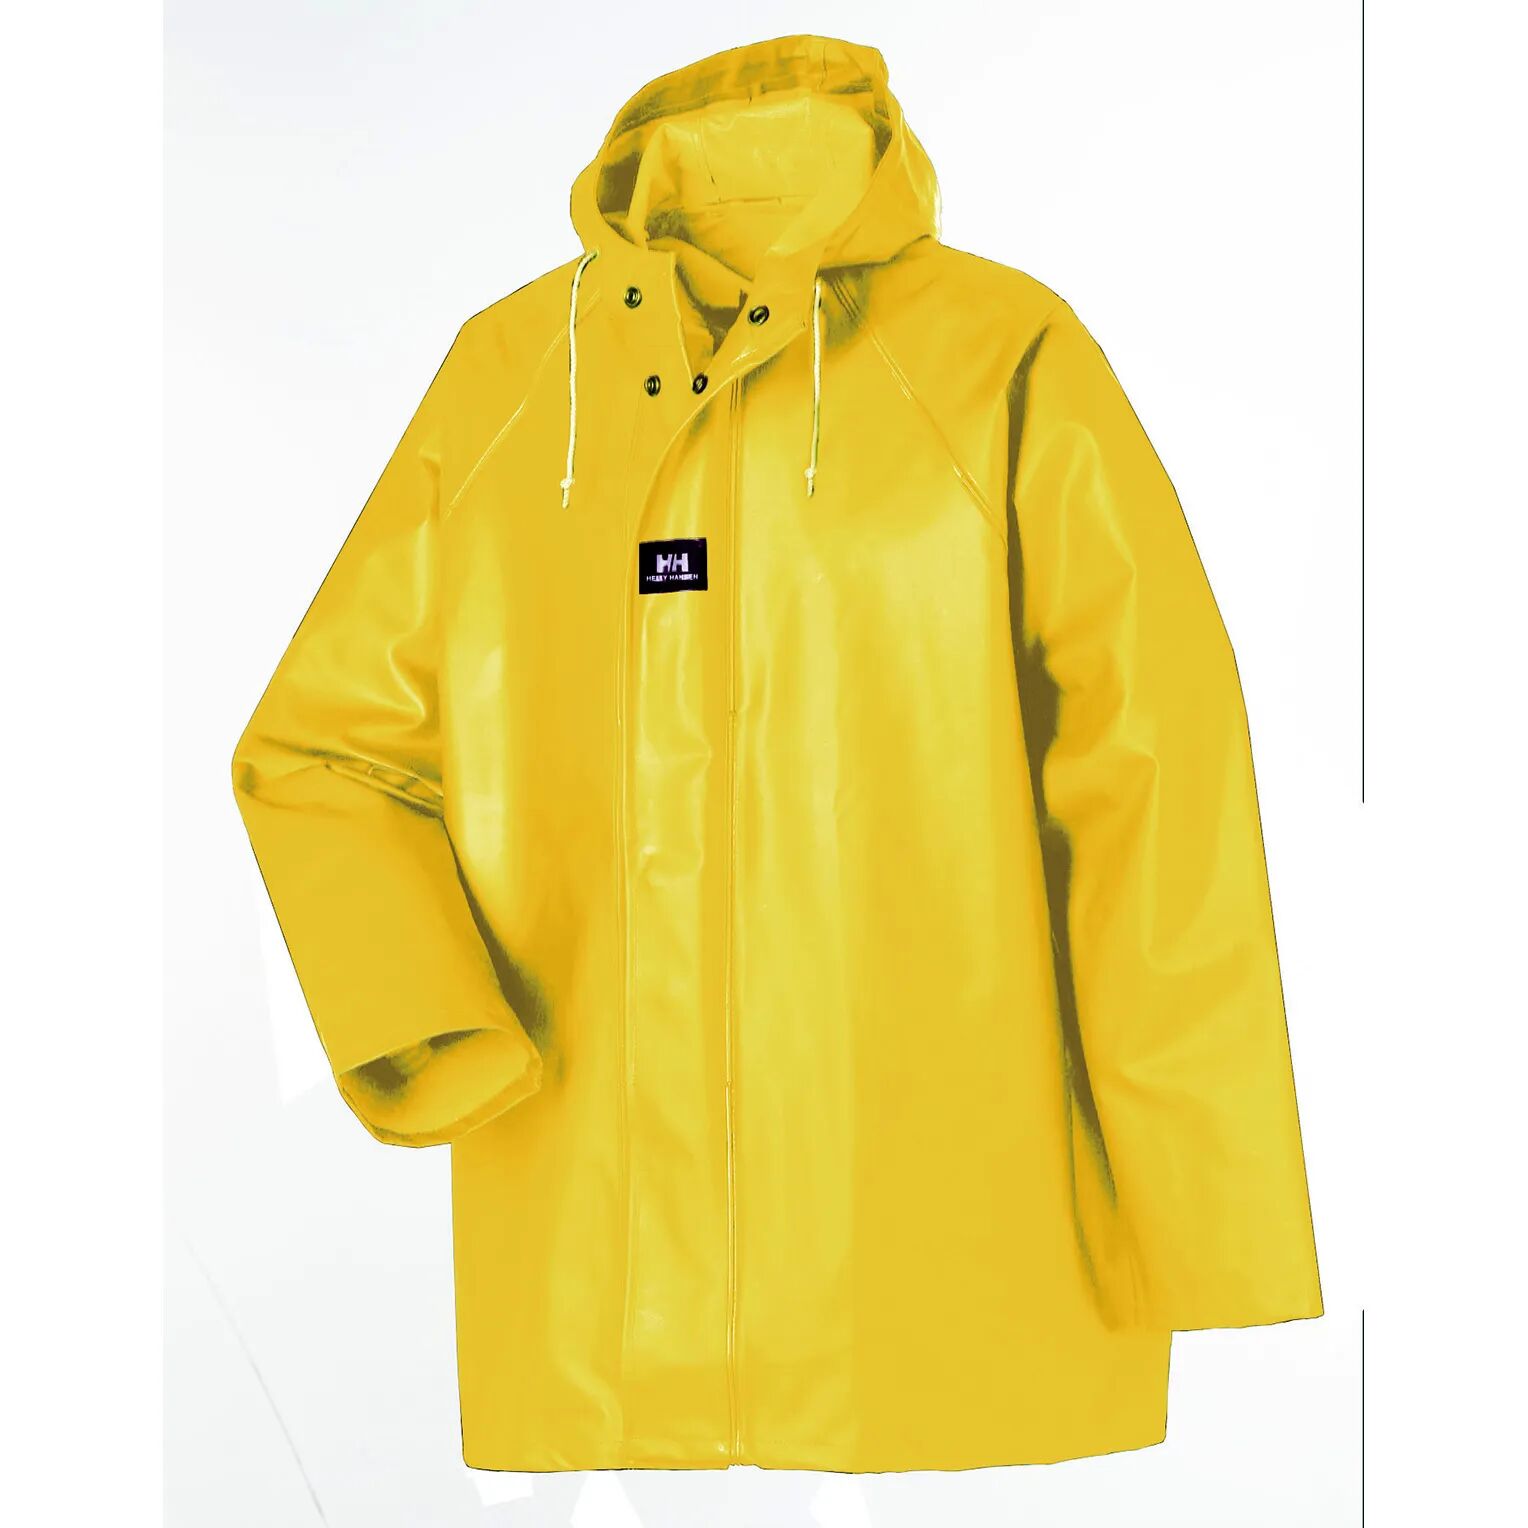 HH Workwear Helly Hansen WorkwearHighliner 100% Cotton Waterproof Jacket Yellow XXXXL